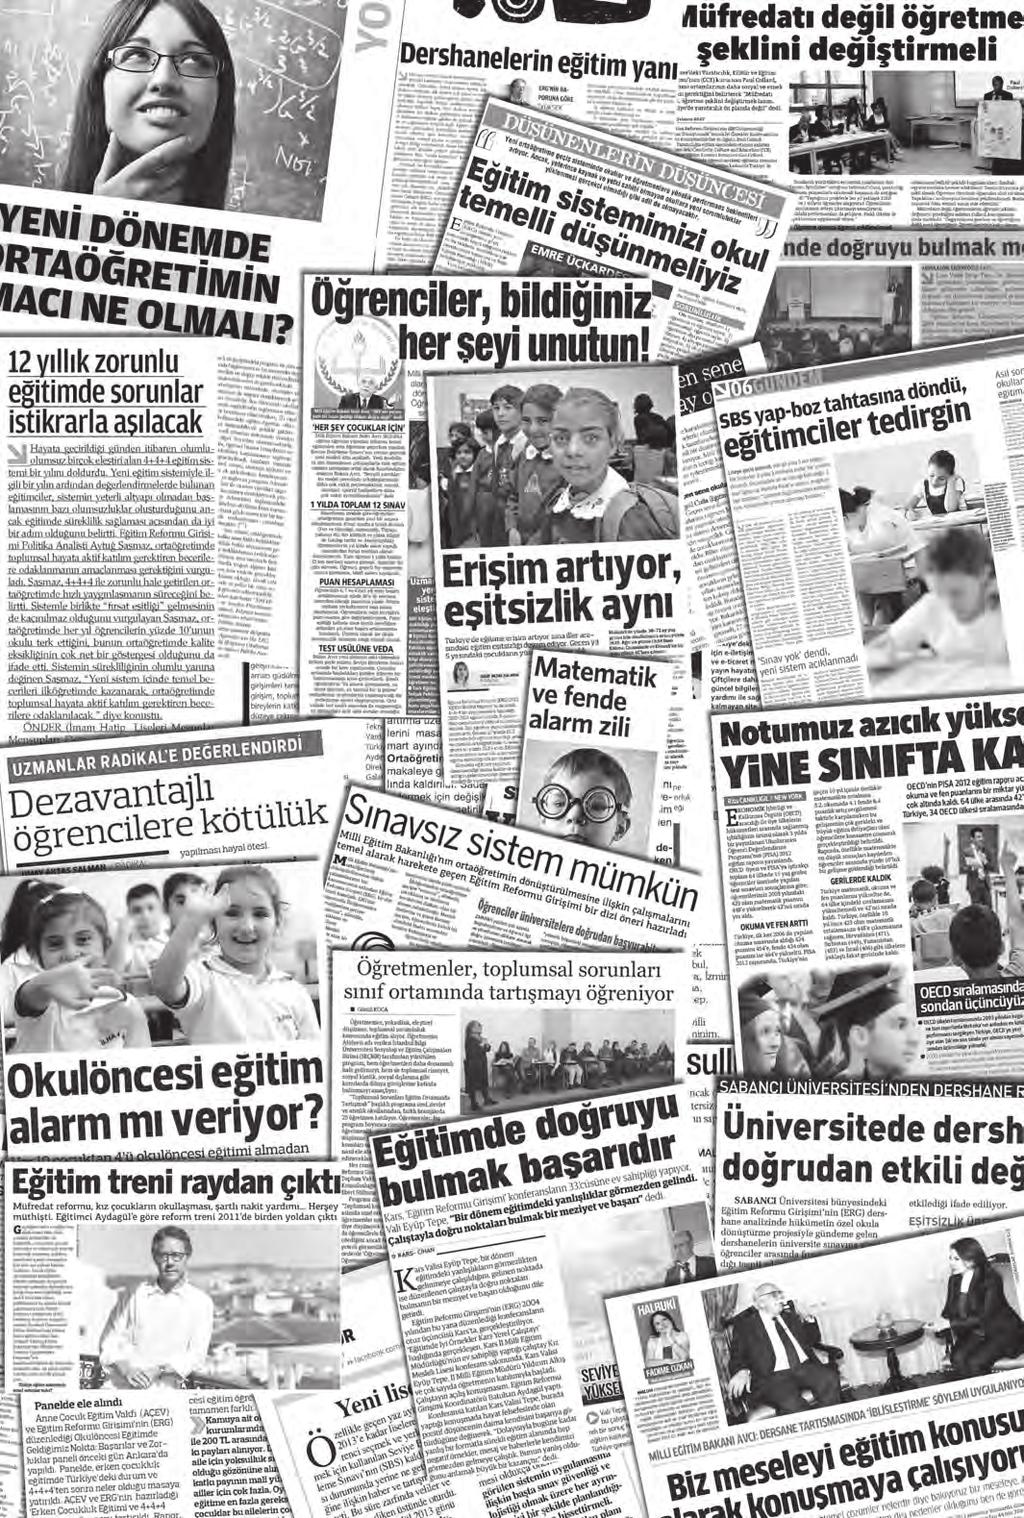 HERKES Ç N KAL TEL E T M ERG 2013 Eğitim Reformu Girişimi (ERG) 2003 ten bu yana sürdürdüğü çalışmalarıyla, Türkiye de eğitimin niteliğiyle ilgili olarak kamu ve diğer paydaşlar arasında diyalog